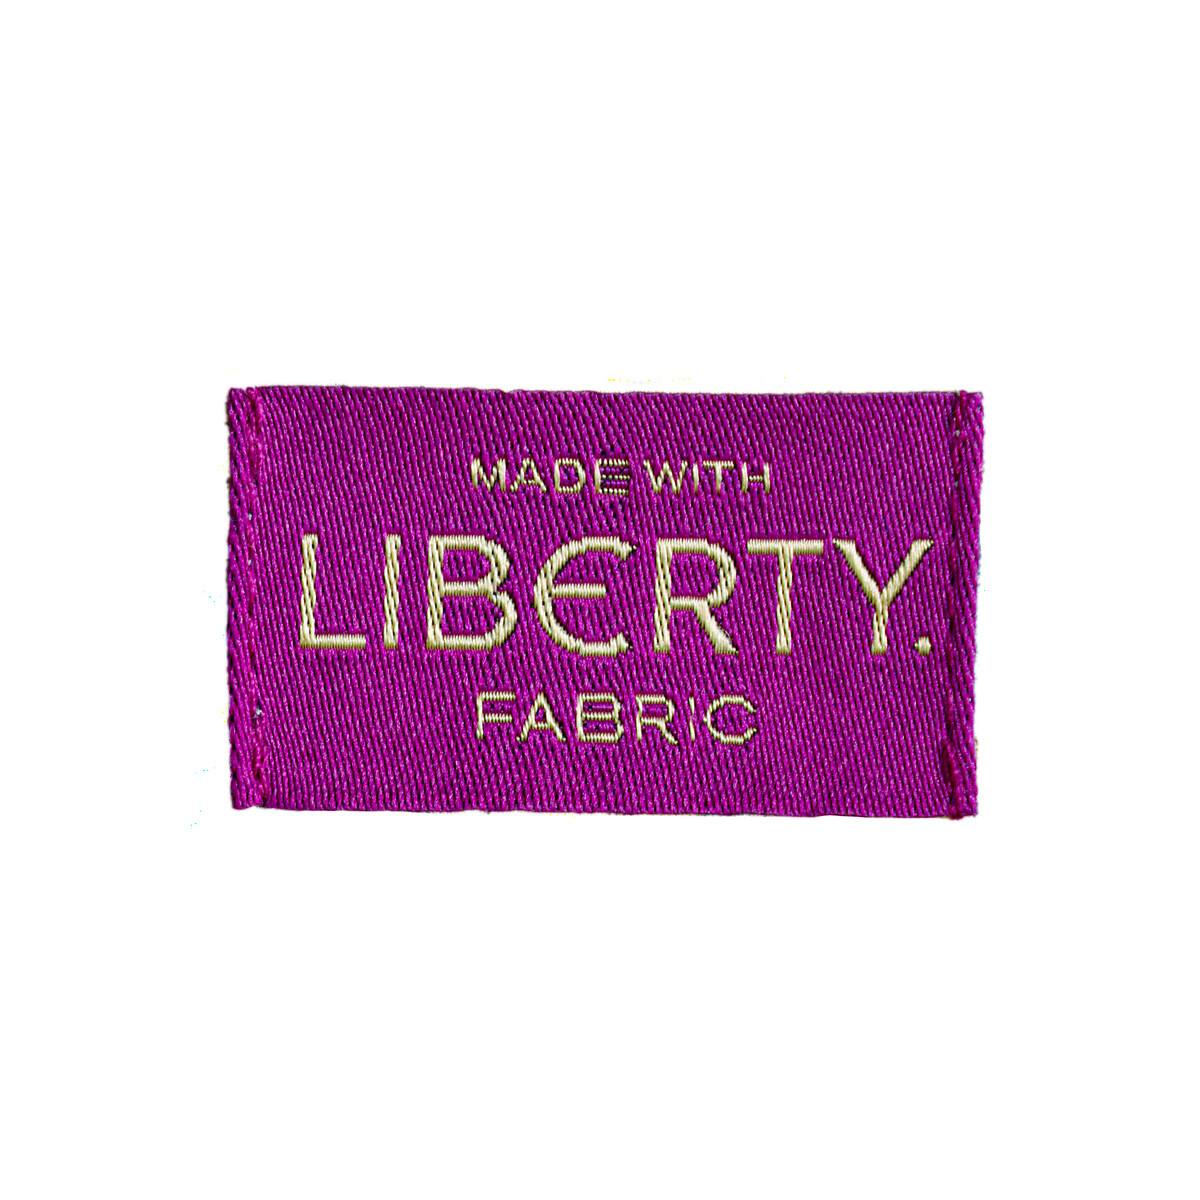 Шорты С принтом Liberty Fabrics 44 (FR) - 50 (RUS) другие LaRedoute, размер 44 (FR) - 50 (RUS) Шорты С принтом Liberty Fabrics 44 (FR) - 50 (RUS) другие - фото 5